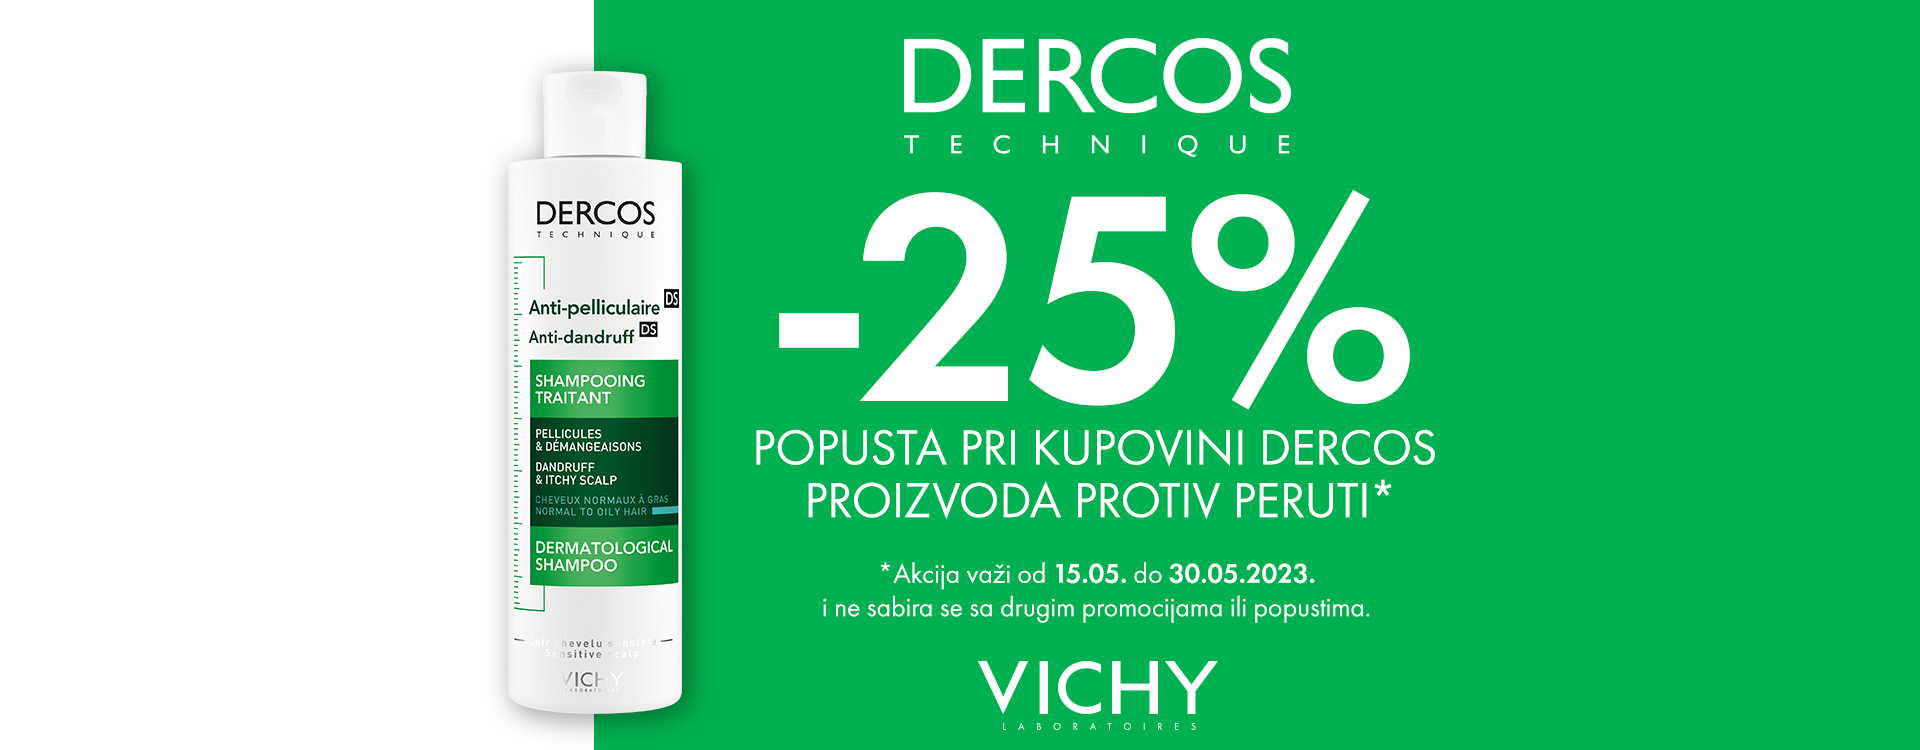 Vichy Dercos proizvodi